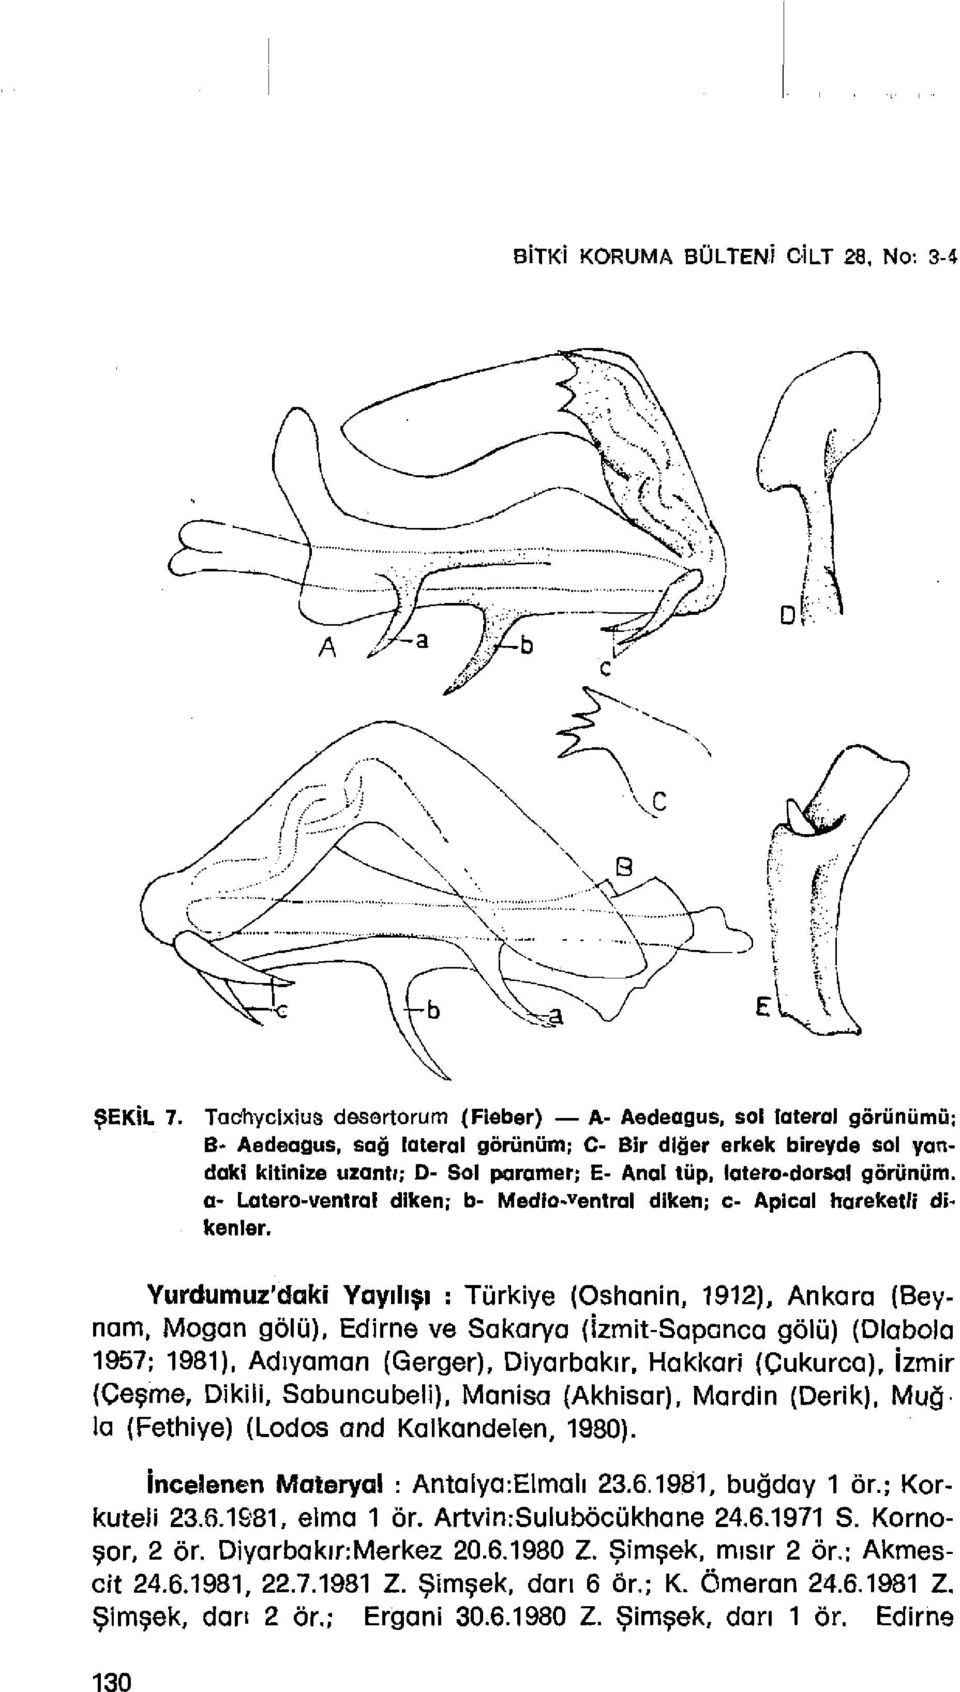 a- Latero-ventral dlken: b- Media-ventral diken: c- Apical hareketli dikenler. Yurdumuz'daki YaYlh,. : Tiirkiye (Oshanin, 1912). Ankara (Beynom.